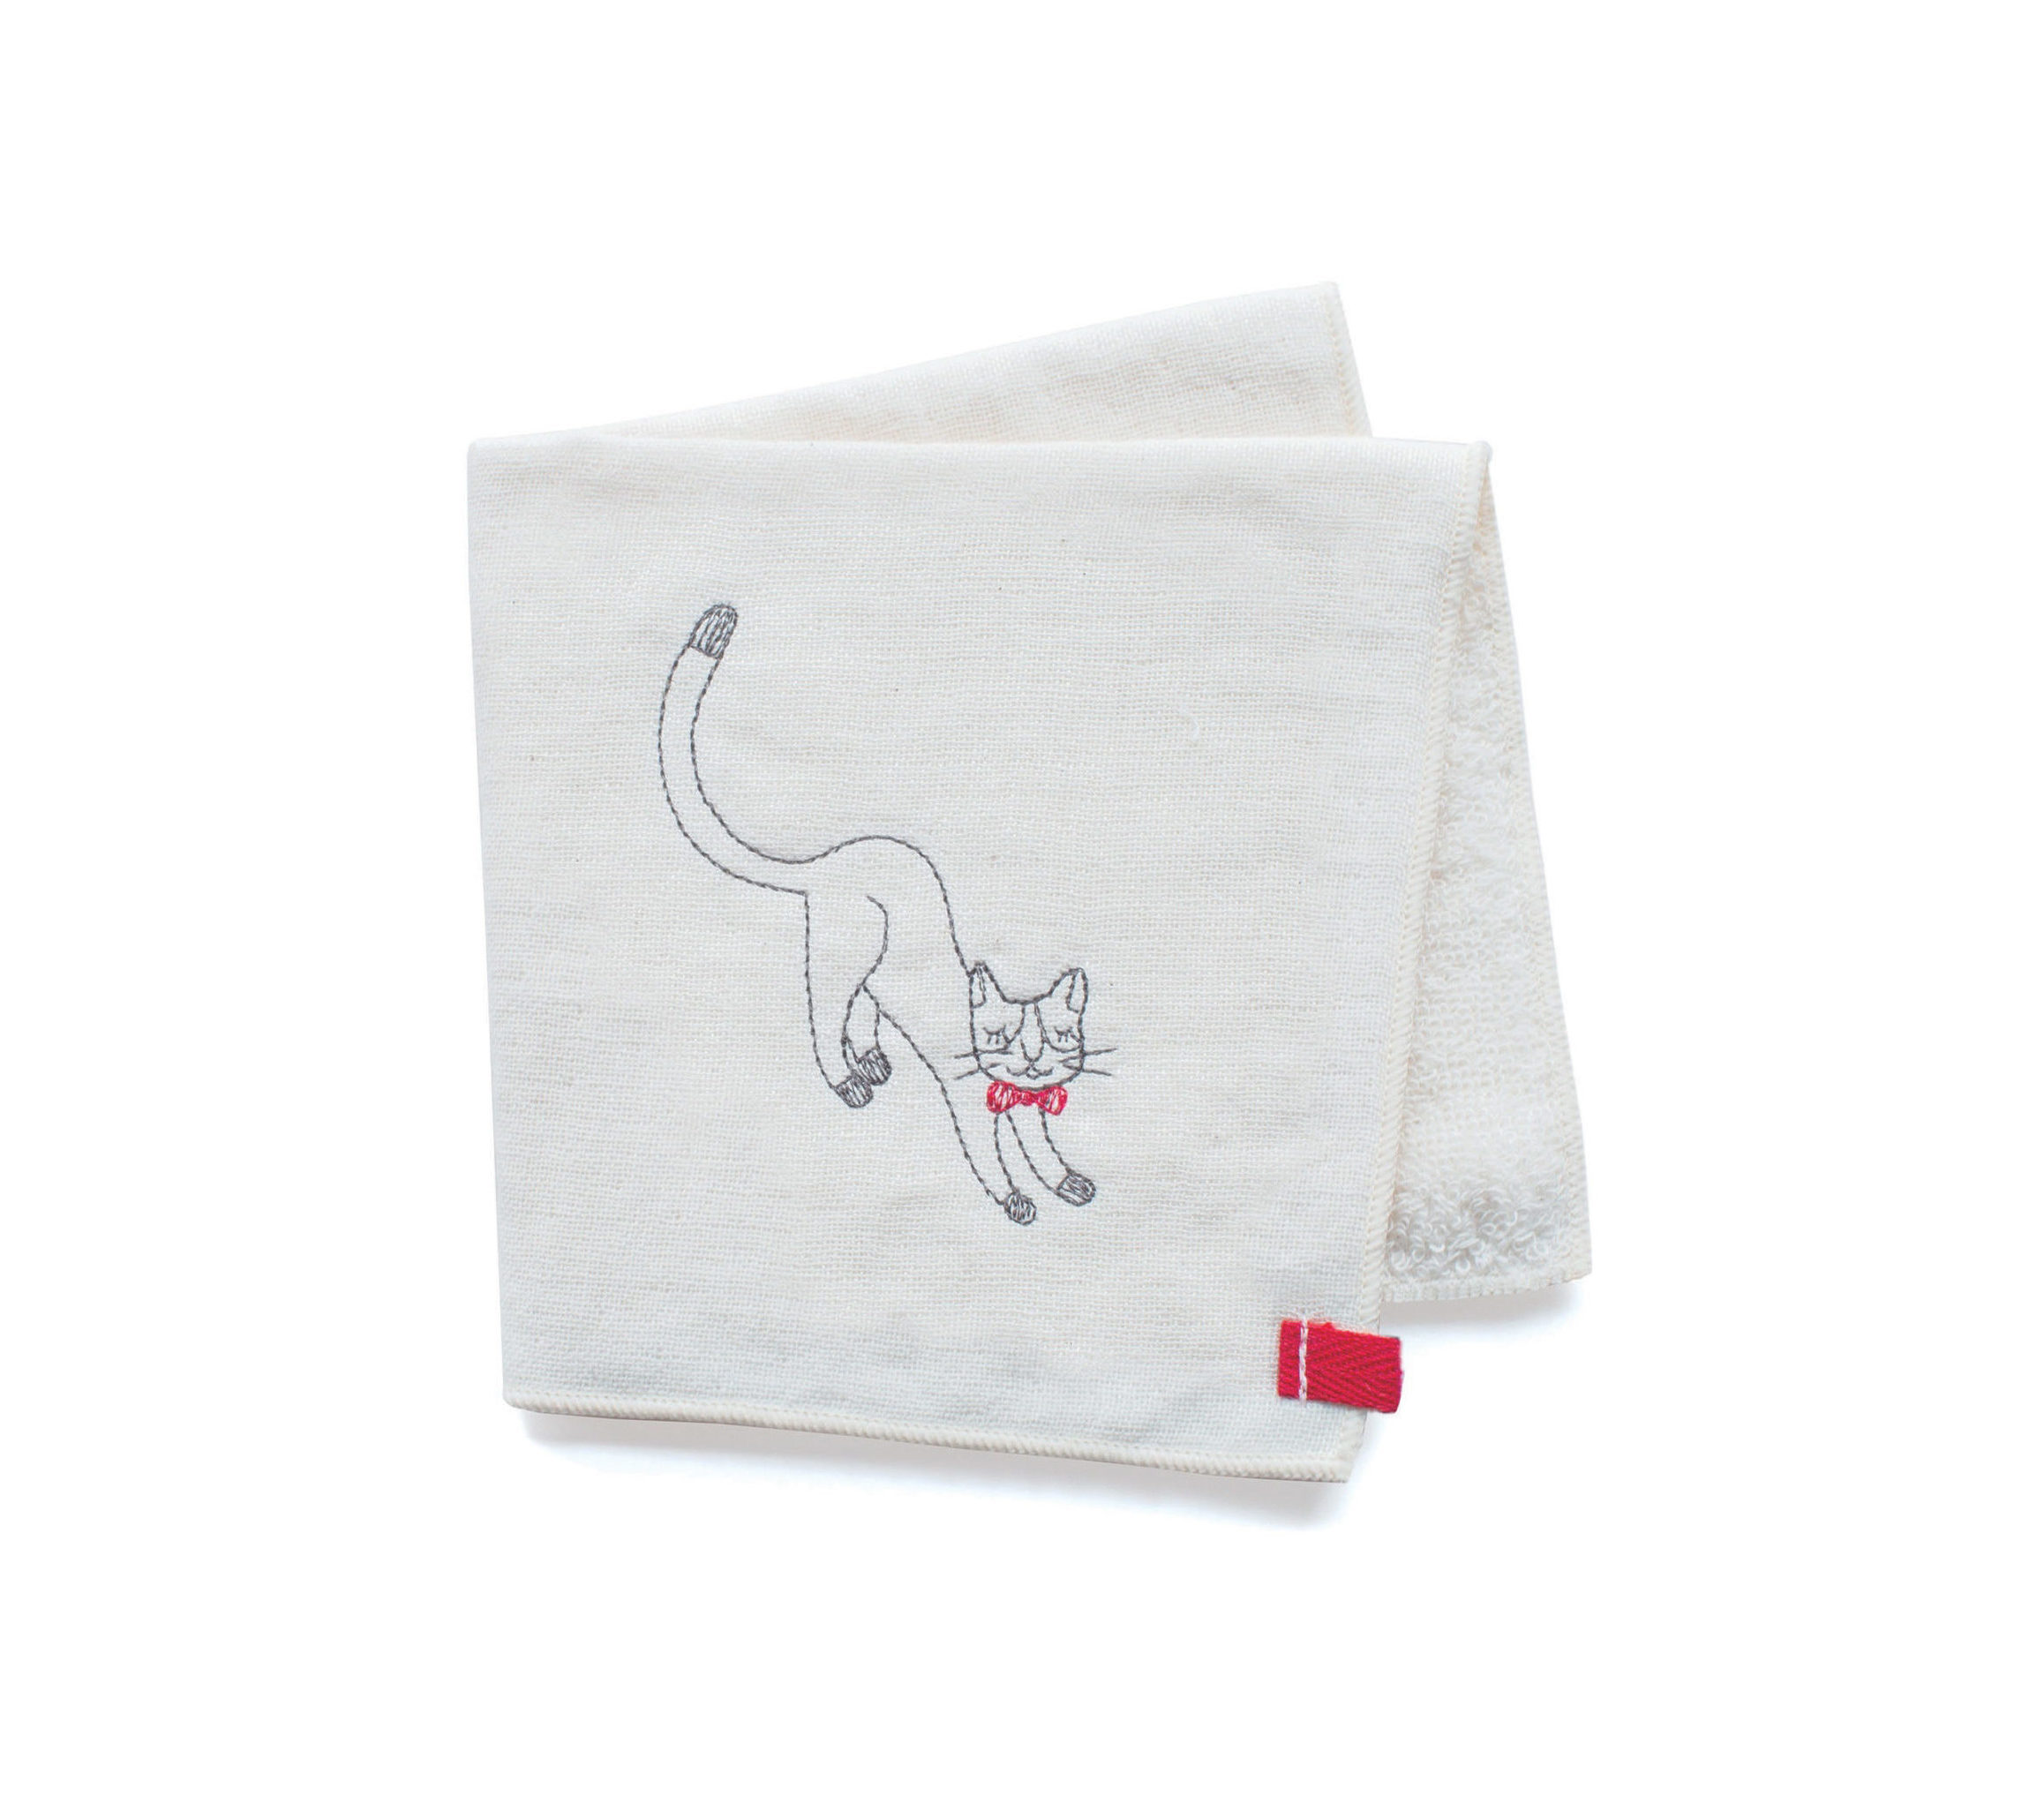 上質なタオルハンカチはプレゼントにも ユニークな猫の刺繍がかわいい Northmall ノースモールプラス